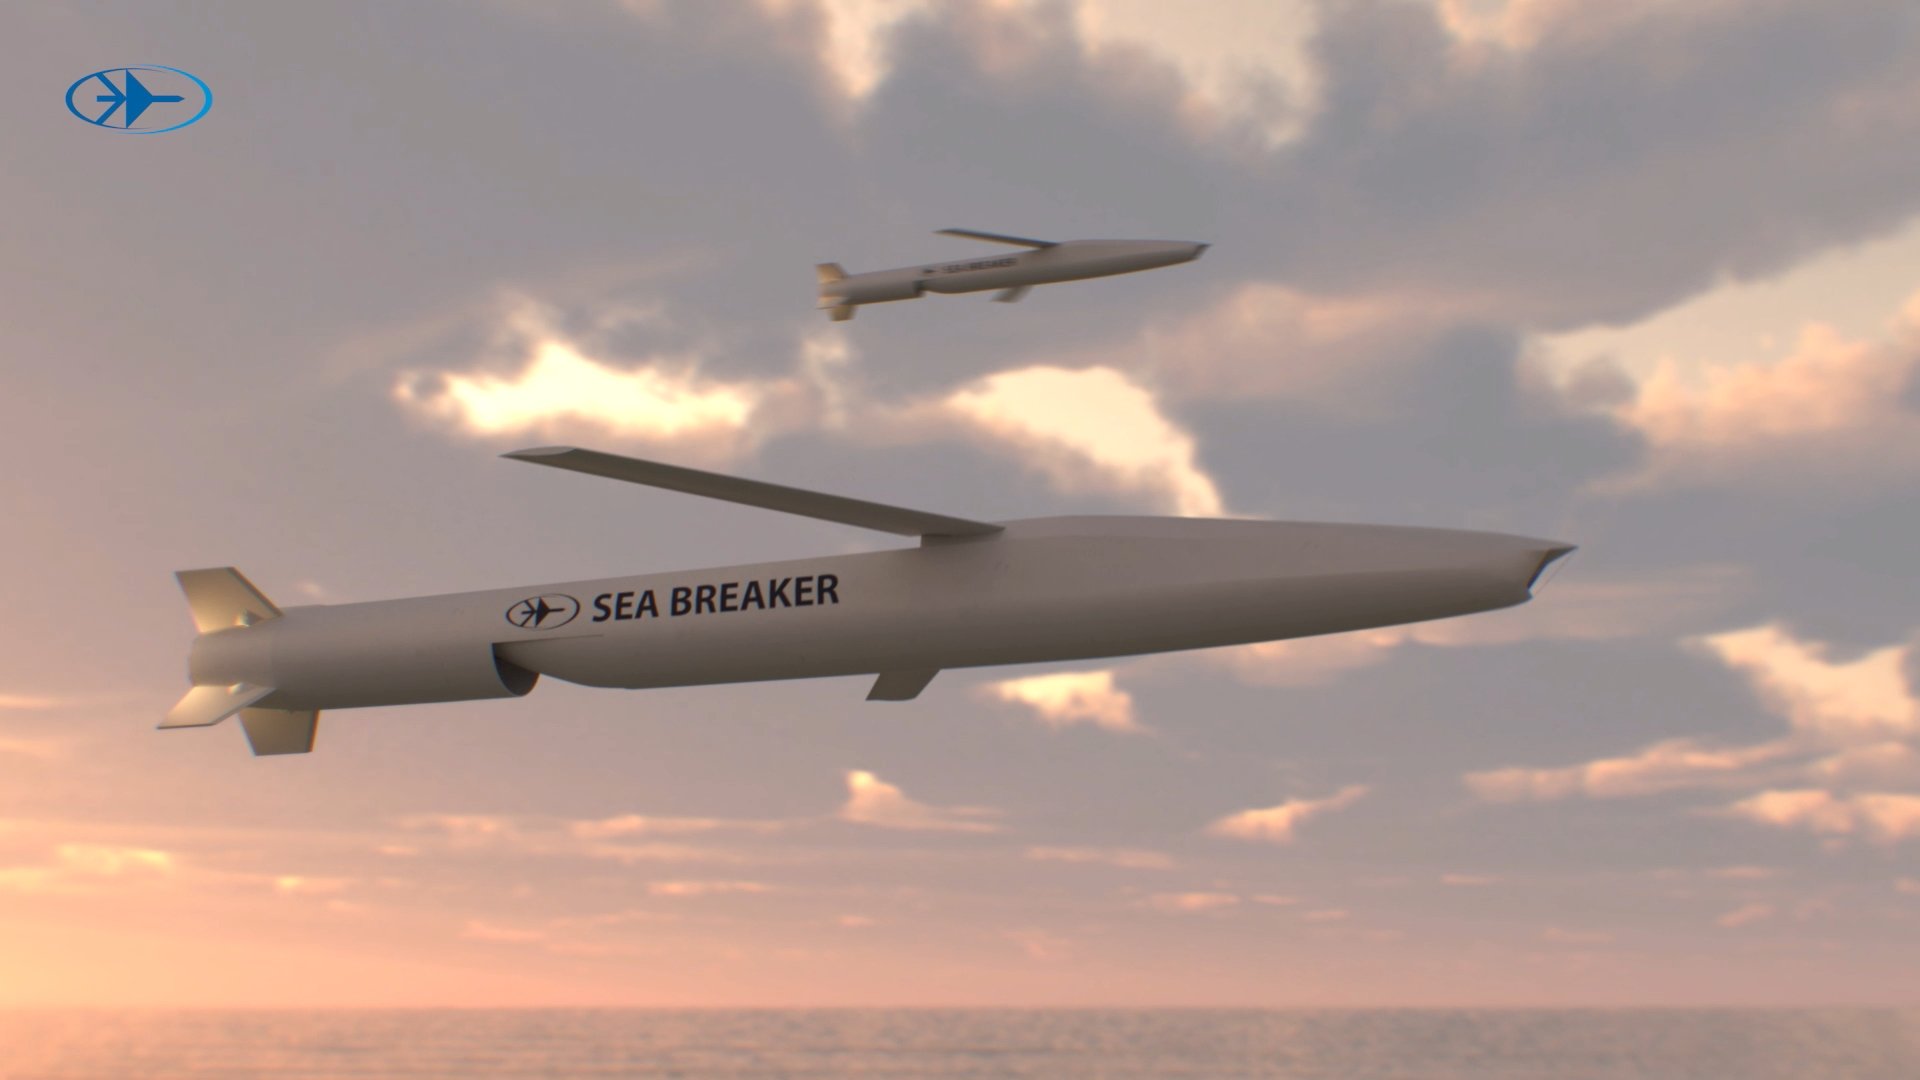 Israelis To Offer US Long-Range Naval Strike Missile: Sea Breaker